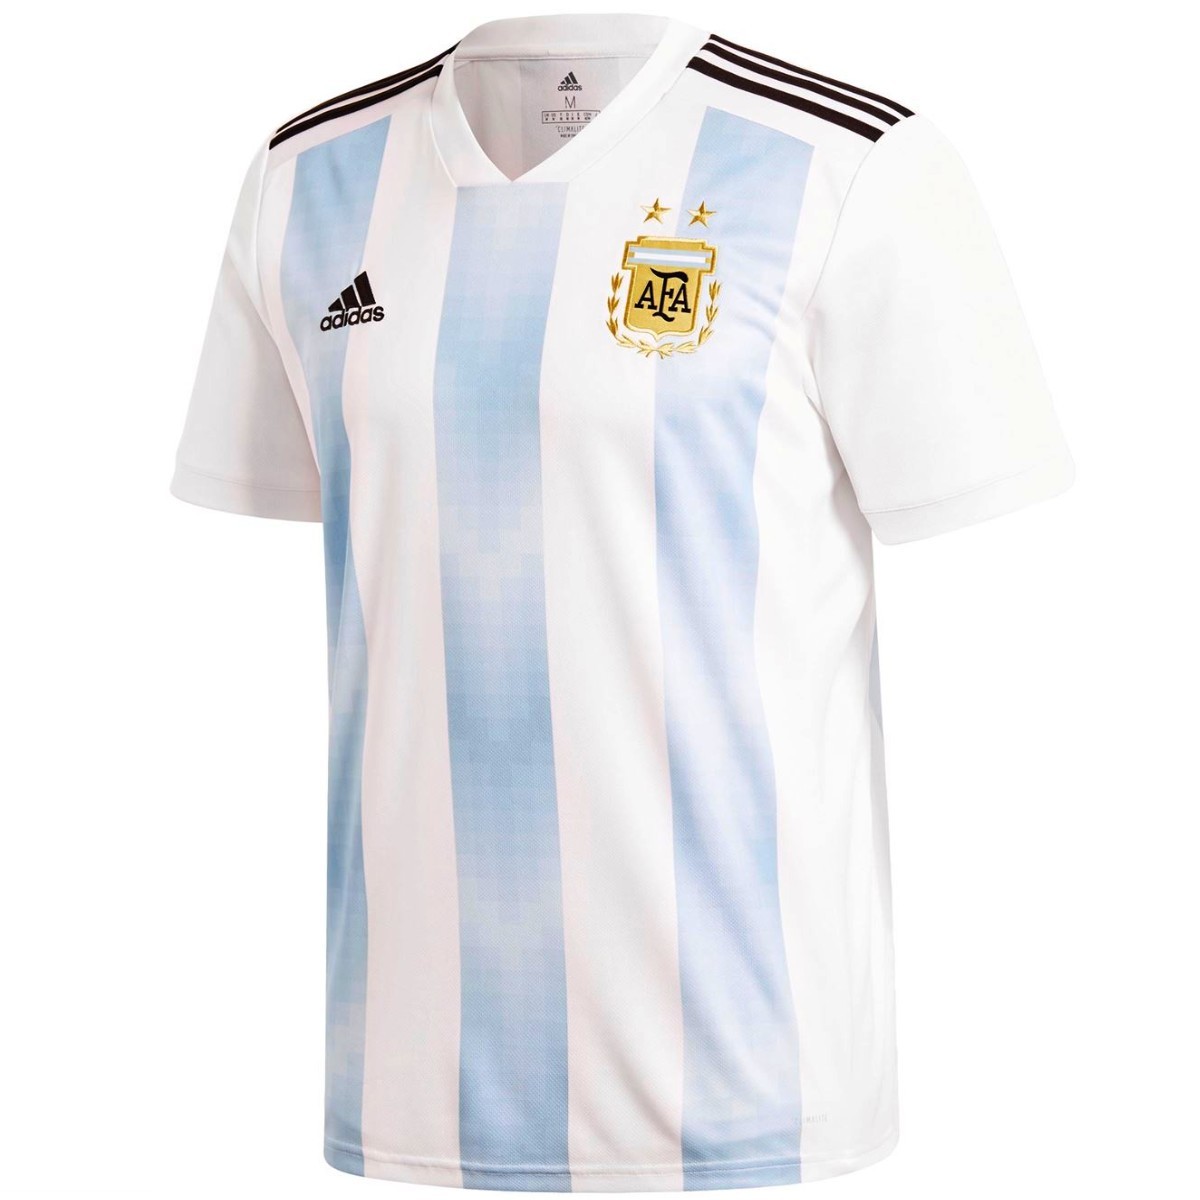 Camiseta futbol Argentina del Mundo 2018 primera Adidas